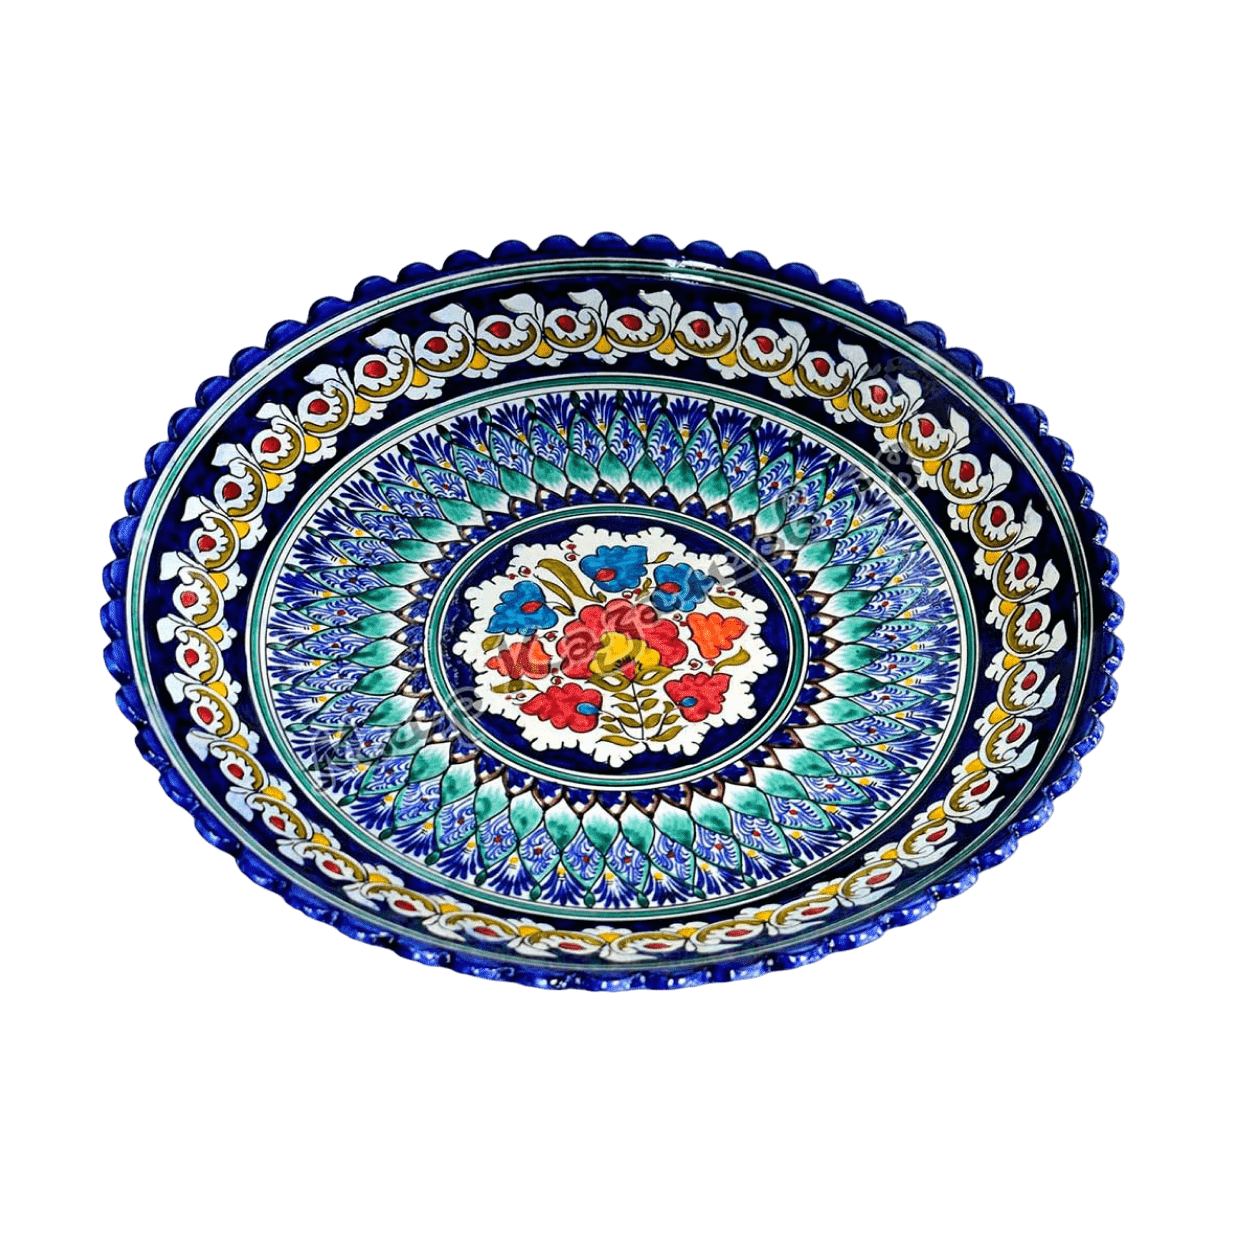 Большое блюдо. Ляган 42 см. Керамика Узбекистана Риштанская. Узбекская керамика Риштан. Посуда Риштан из Узбекистана.